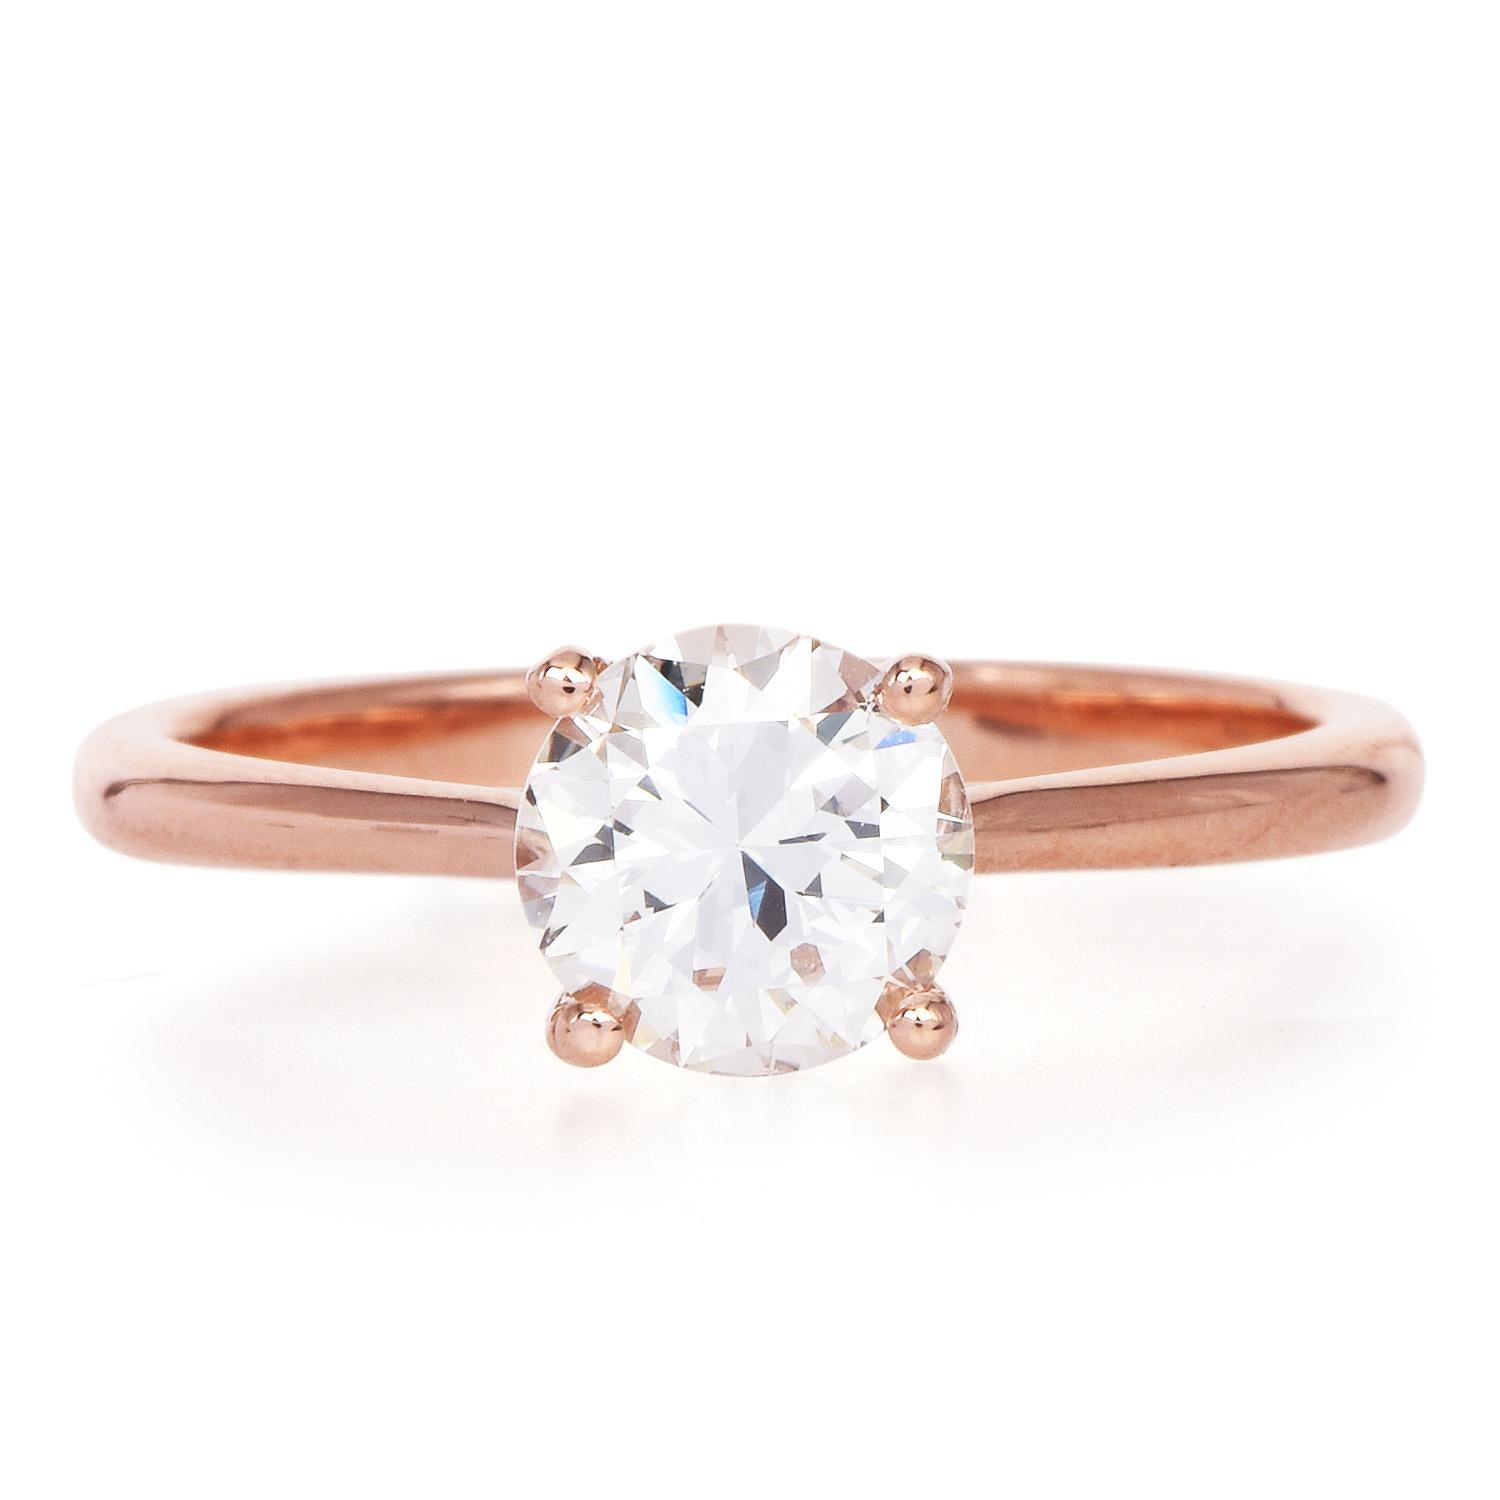 Klassischer Ring in einer rosafarbenen Farbe, mit romantischem Stil

Die Mitte ist aus massivem 14-karätigem Roségold gefertigt und wird von einem GIA-zertifizierten 1,16 Karat Diamanten im Rundschliff, JColor & VS1 Reinheit geschmückt.

Die Spitze